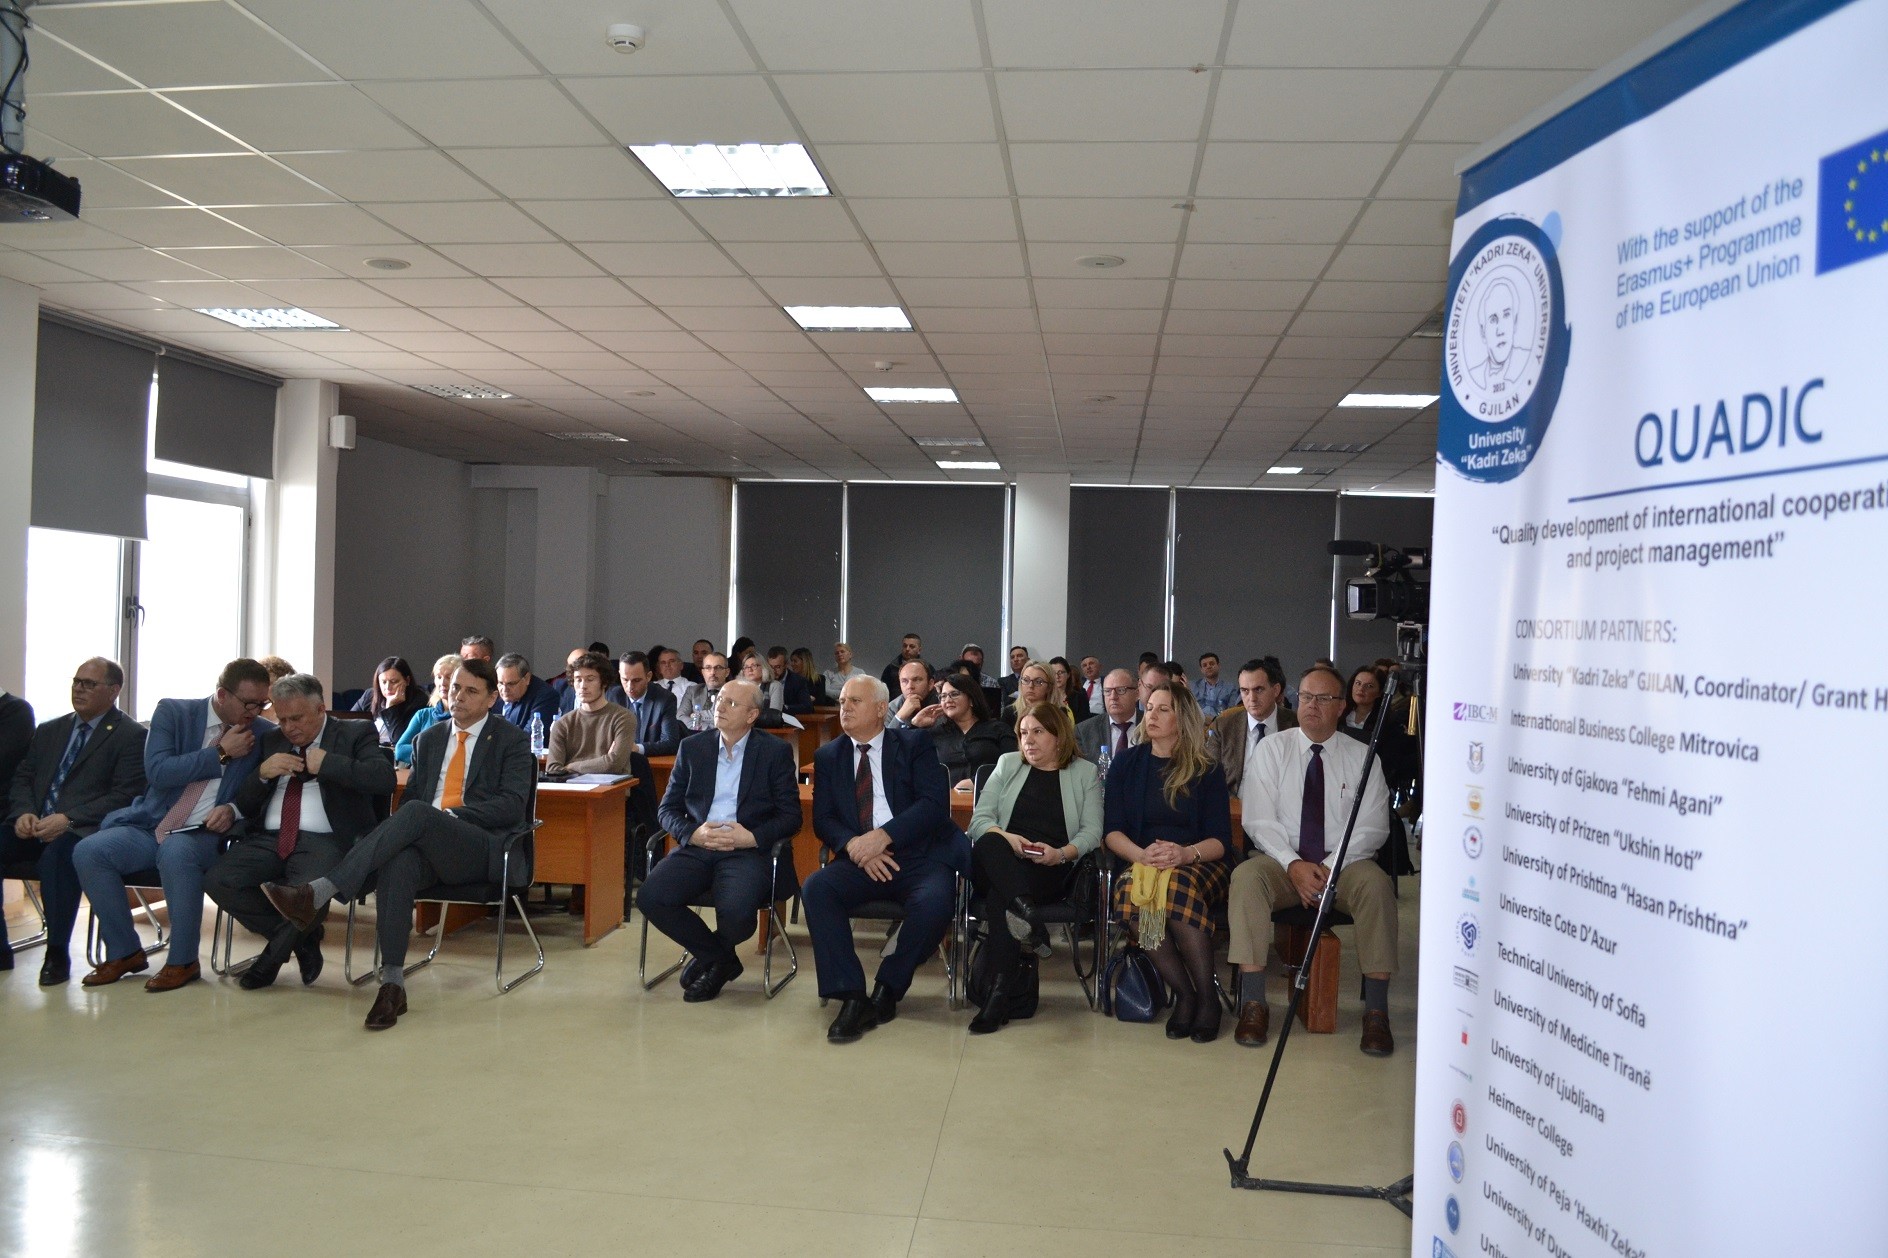 Universiteti i Gjilanit fillon implementimin e projektit QUADIC